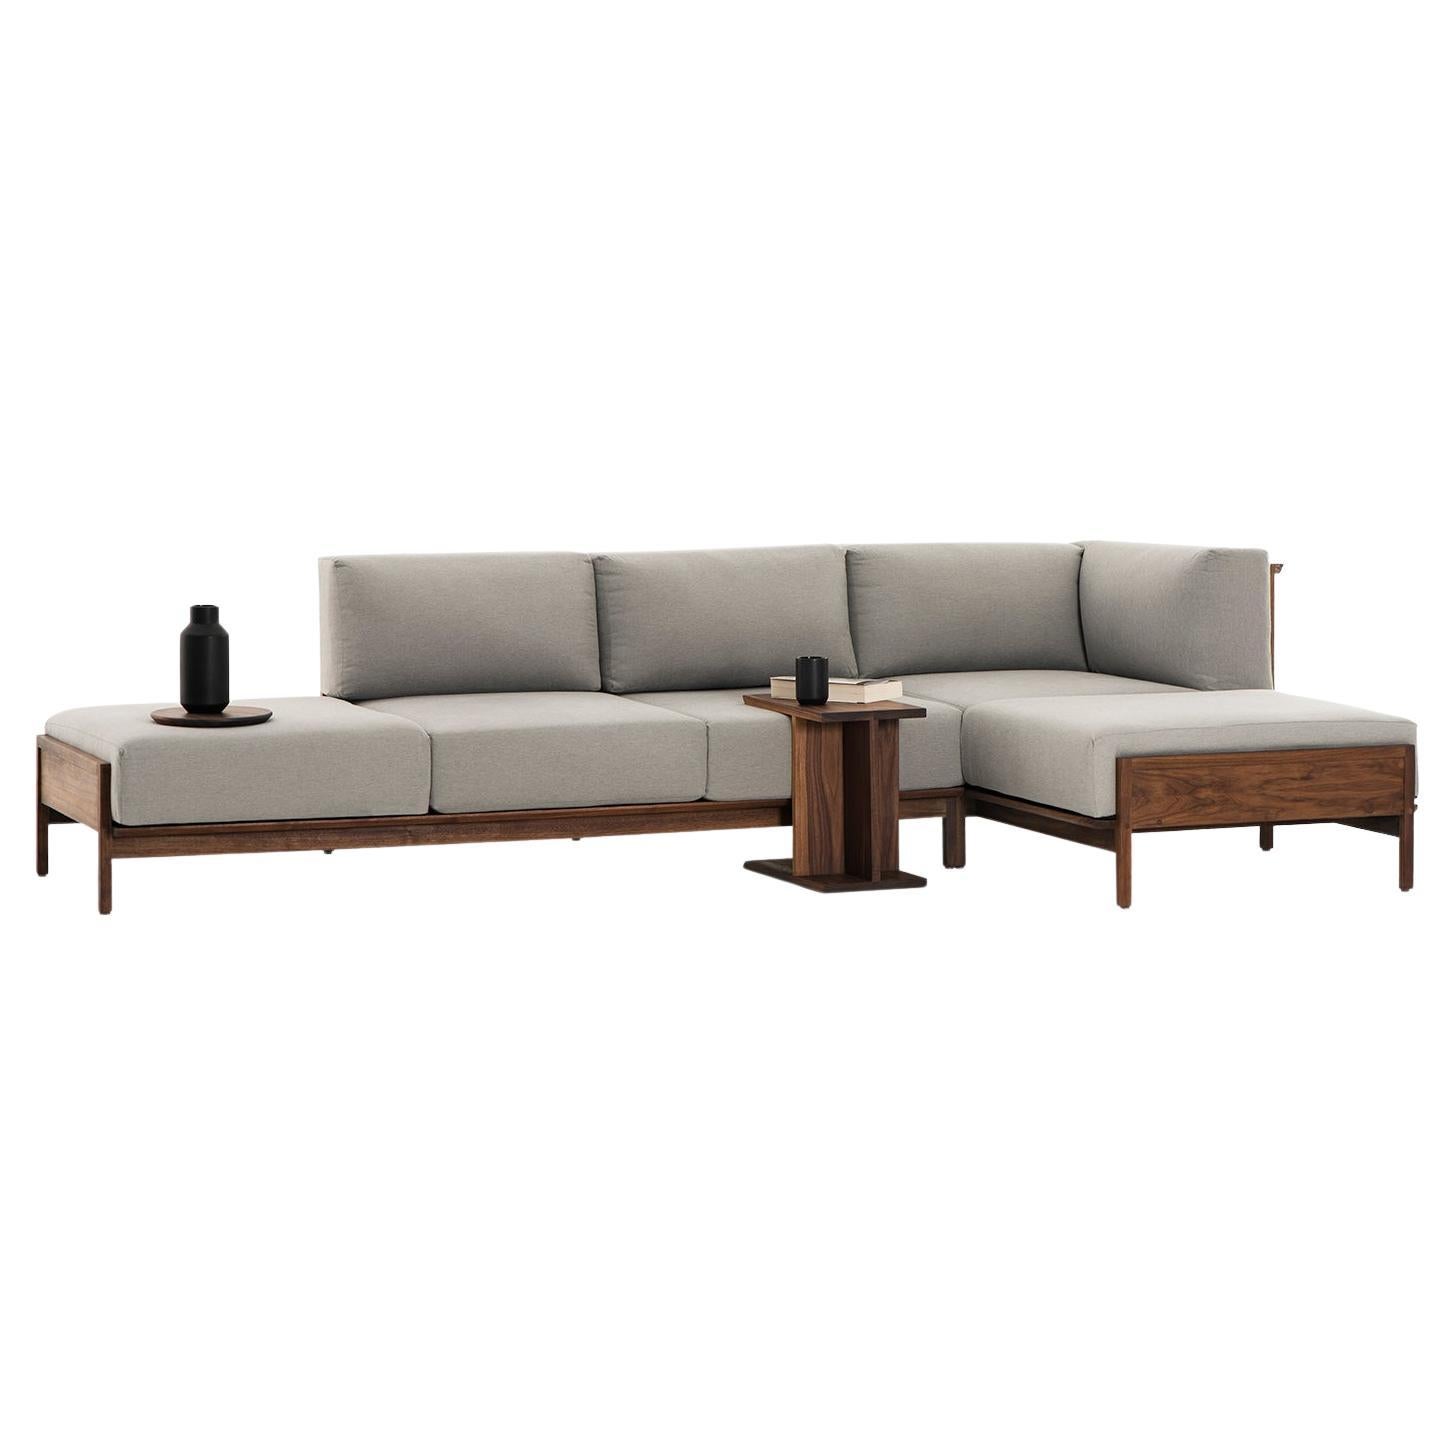 Escuadra Confort, Mexican Contemporary Sofa by Emiliano Molina for Cuchara For Sale